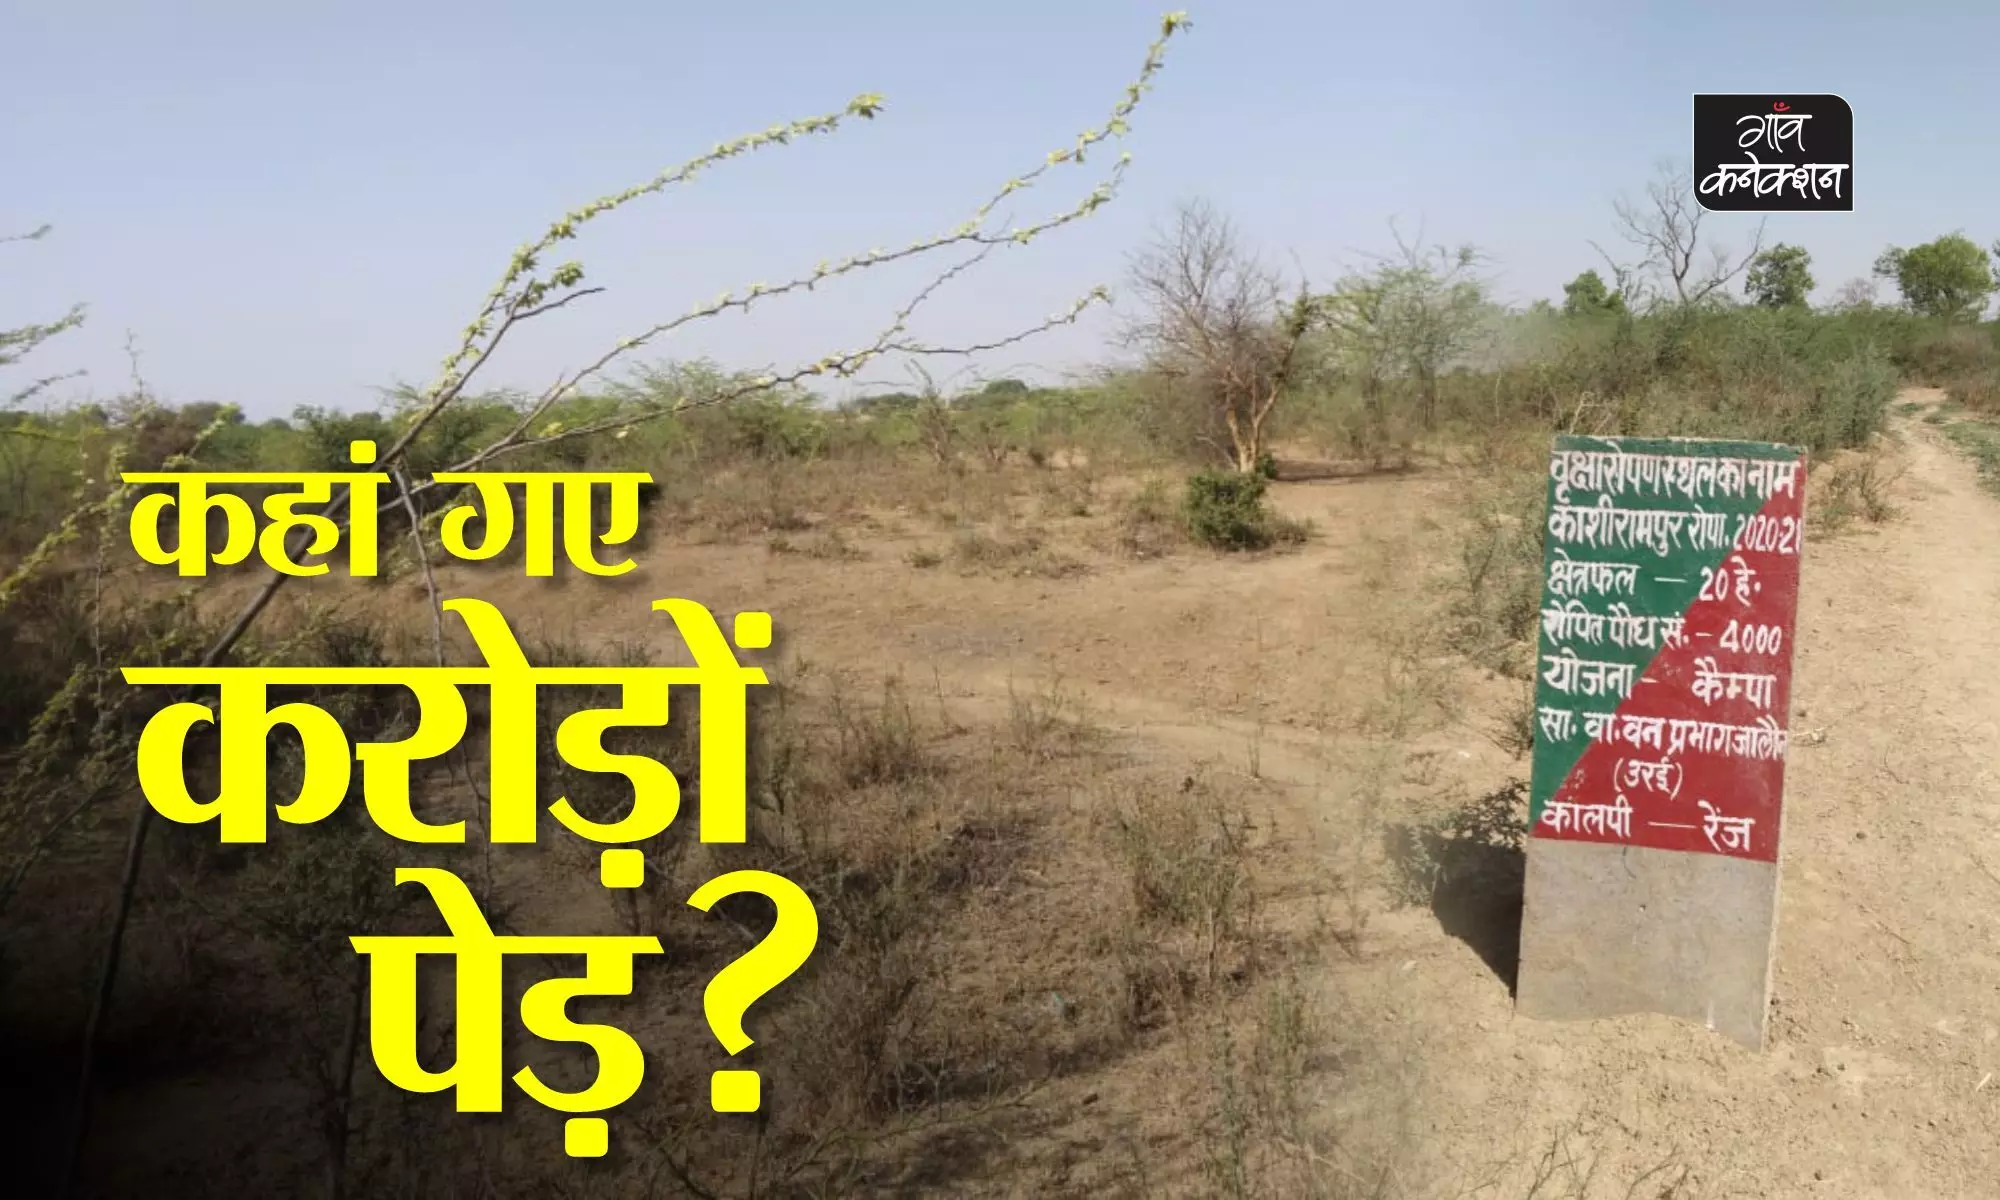 जमीन पर ढूढ़े नहीं मिल रहे कागजों पर लगे पौधे, सामाजिक कार्यकर्ता ने मुख्यमंत्री को चिट्ठी लिखकर की जांच की मांग